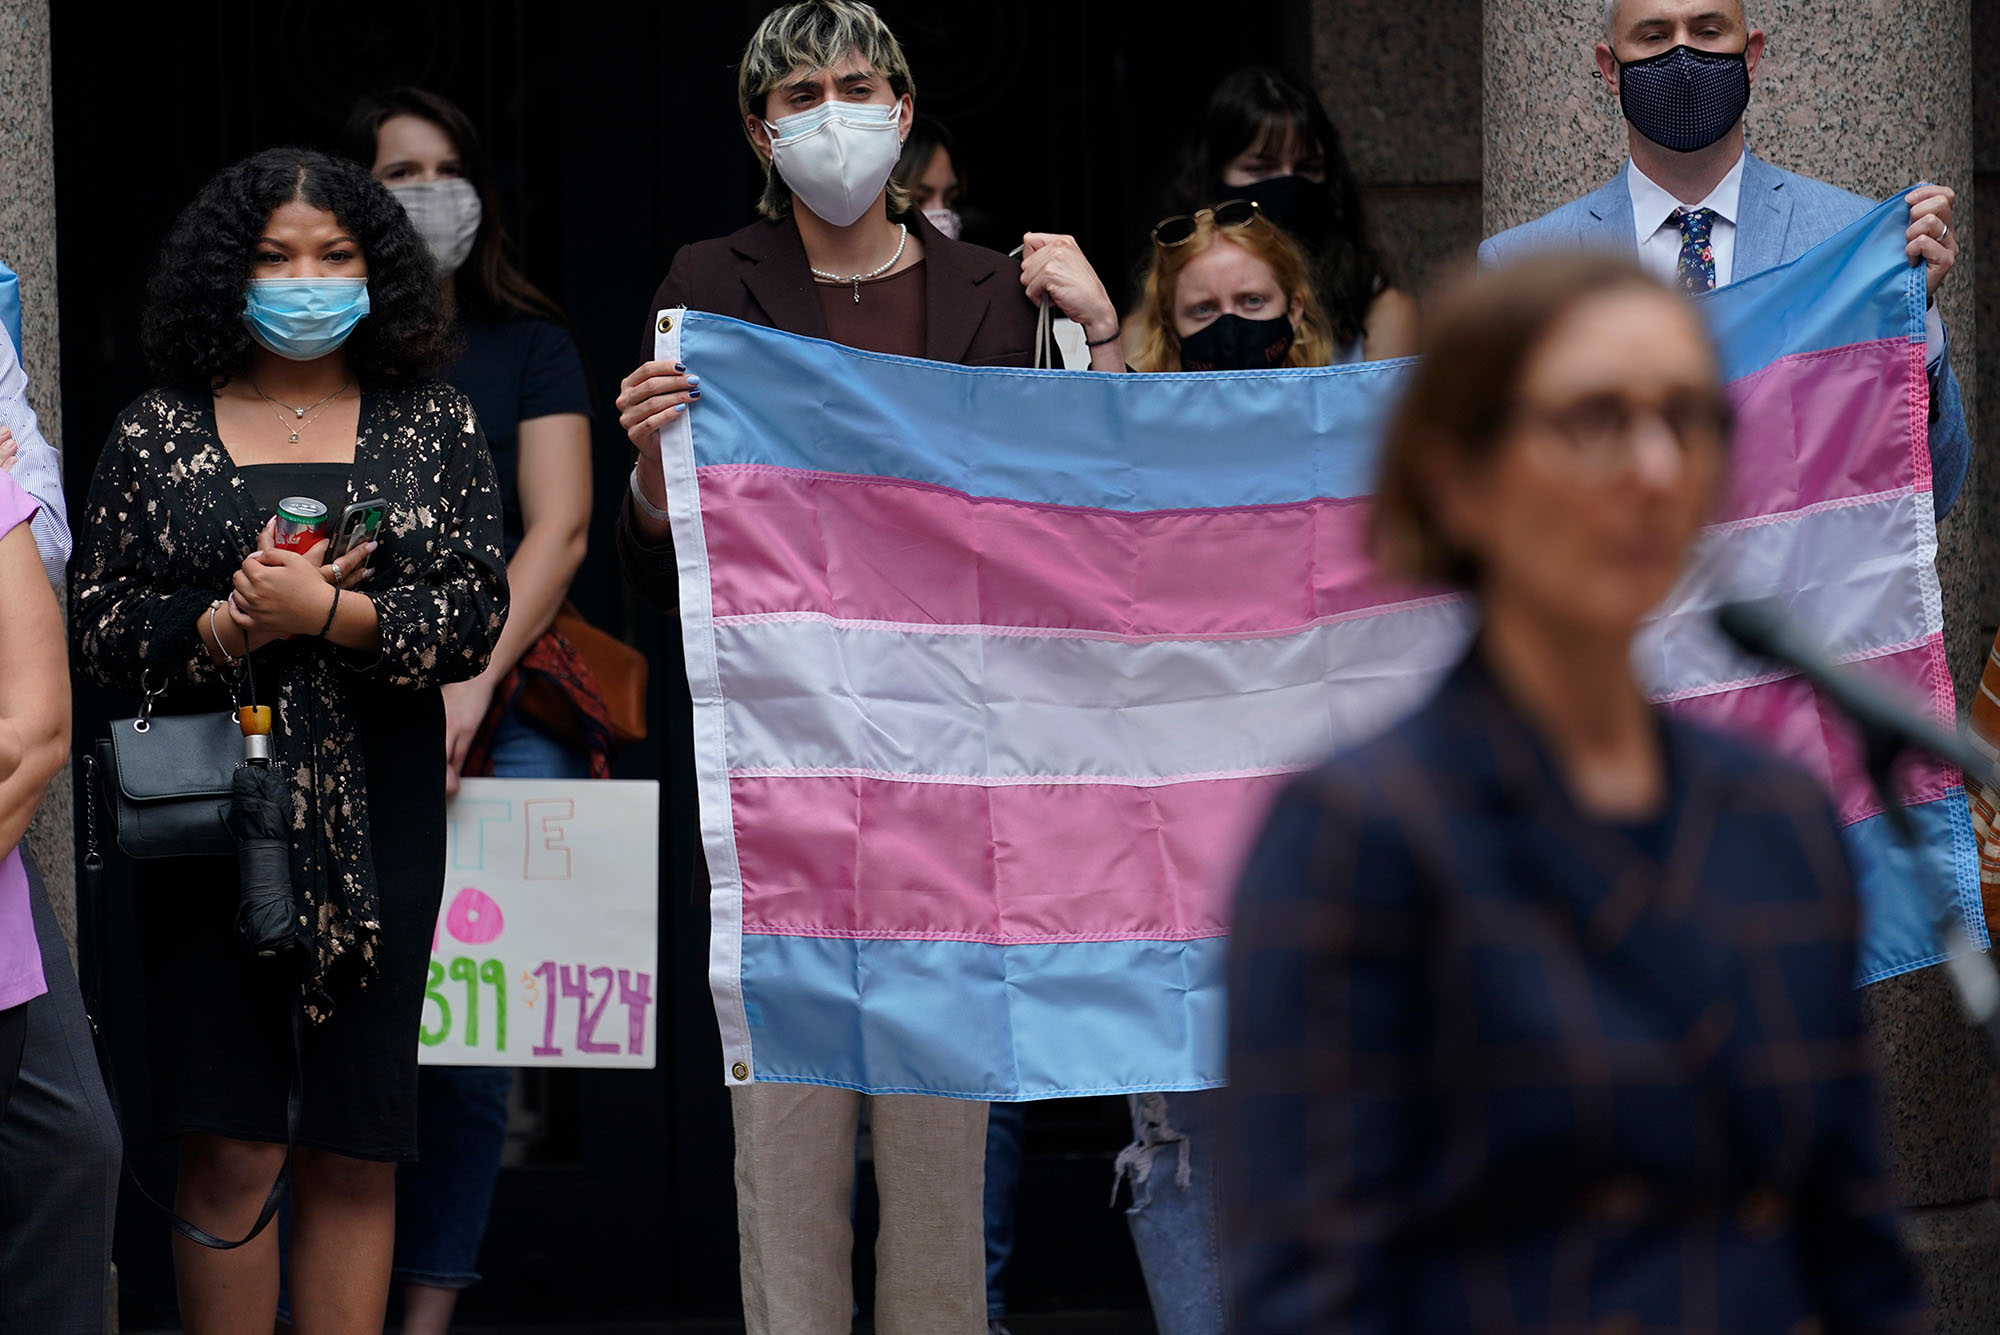 Protect Trans Rights Transgender MTF Trans Pride Shirt Protect